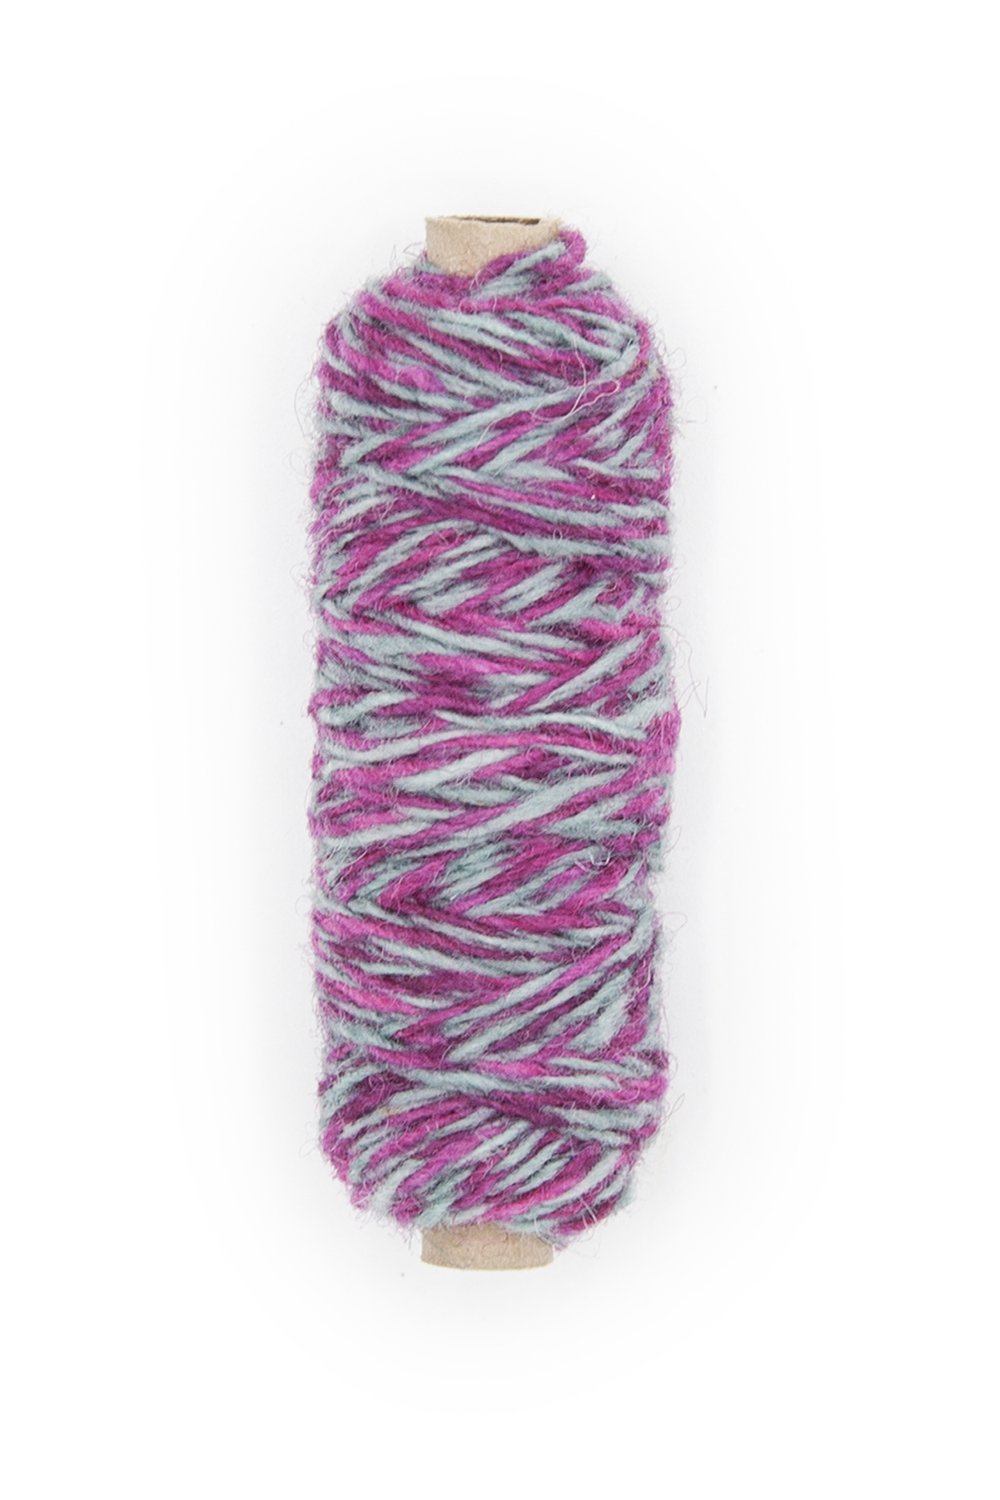 Plied Yarn - Woolyn